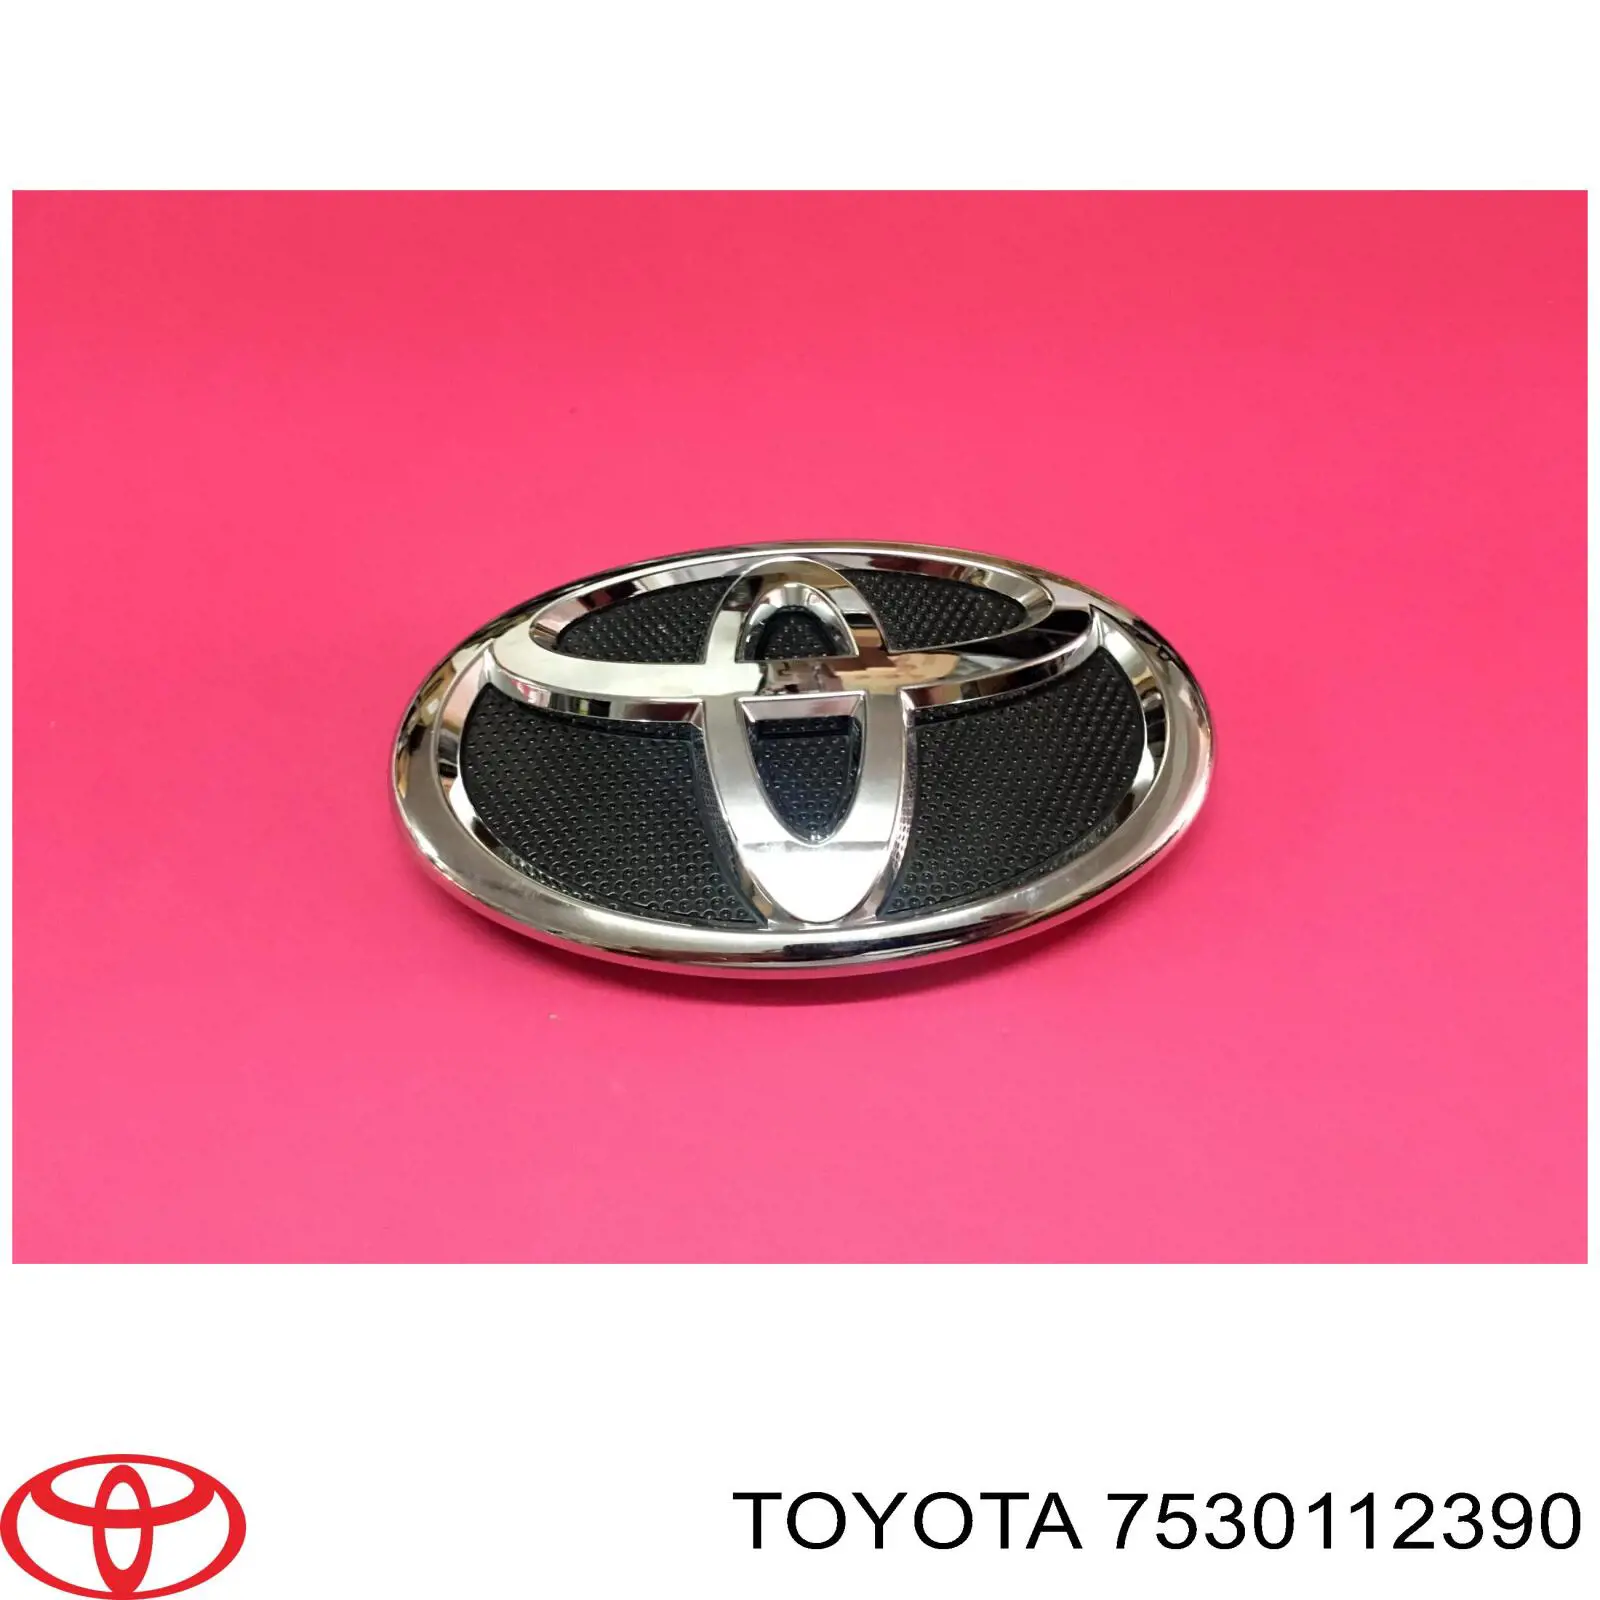 7530112390 Toyota emblema de capó